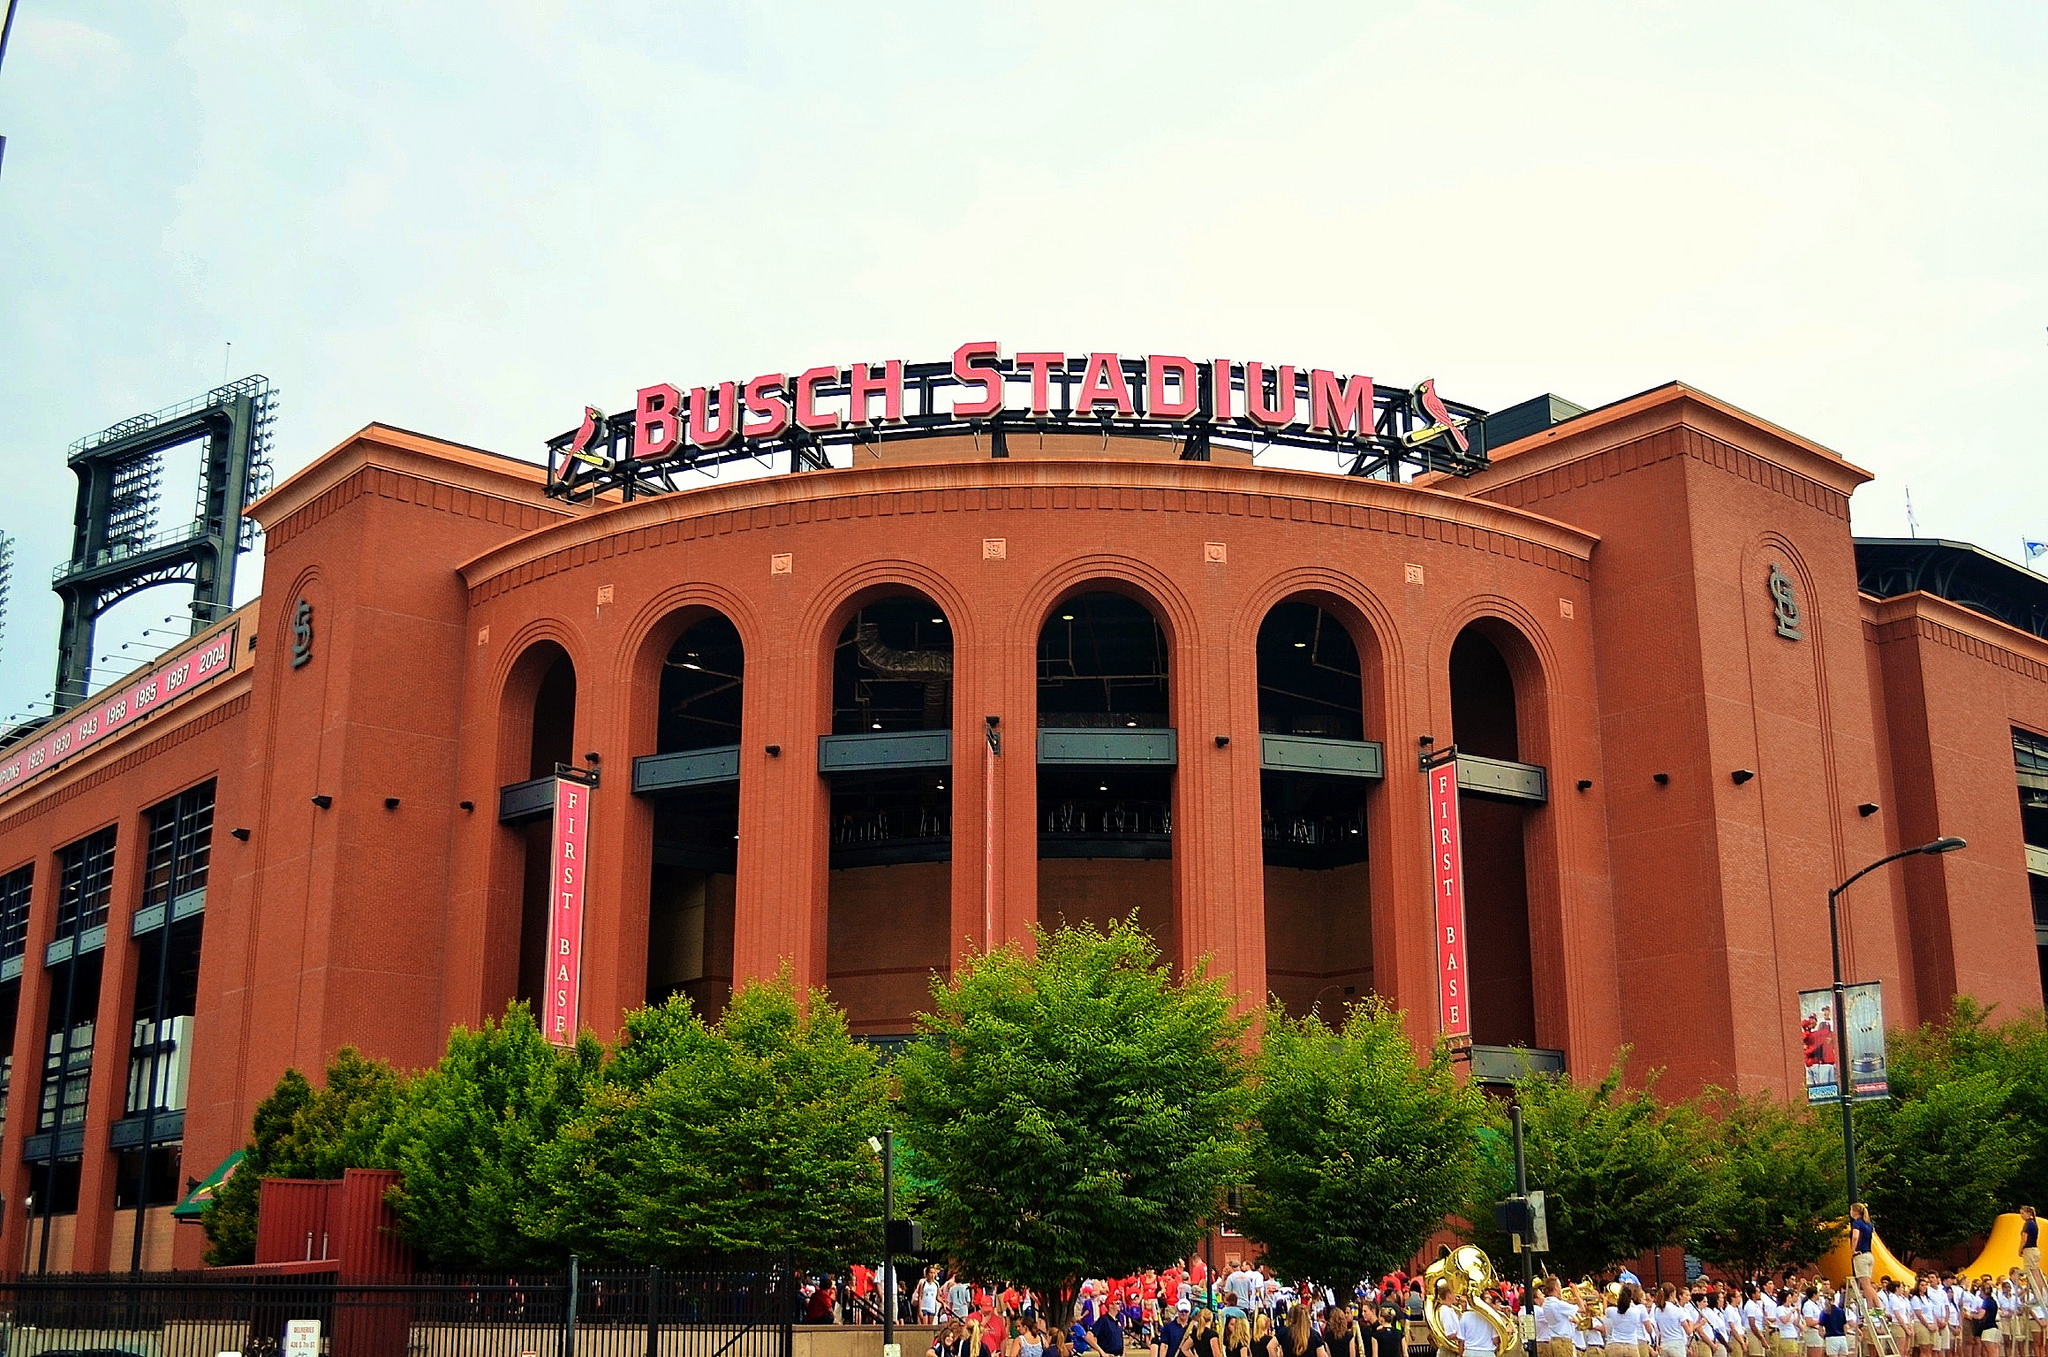 Busch Stadium / St. Louis Cardinals